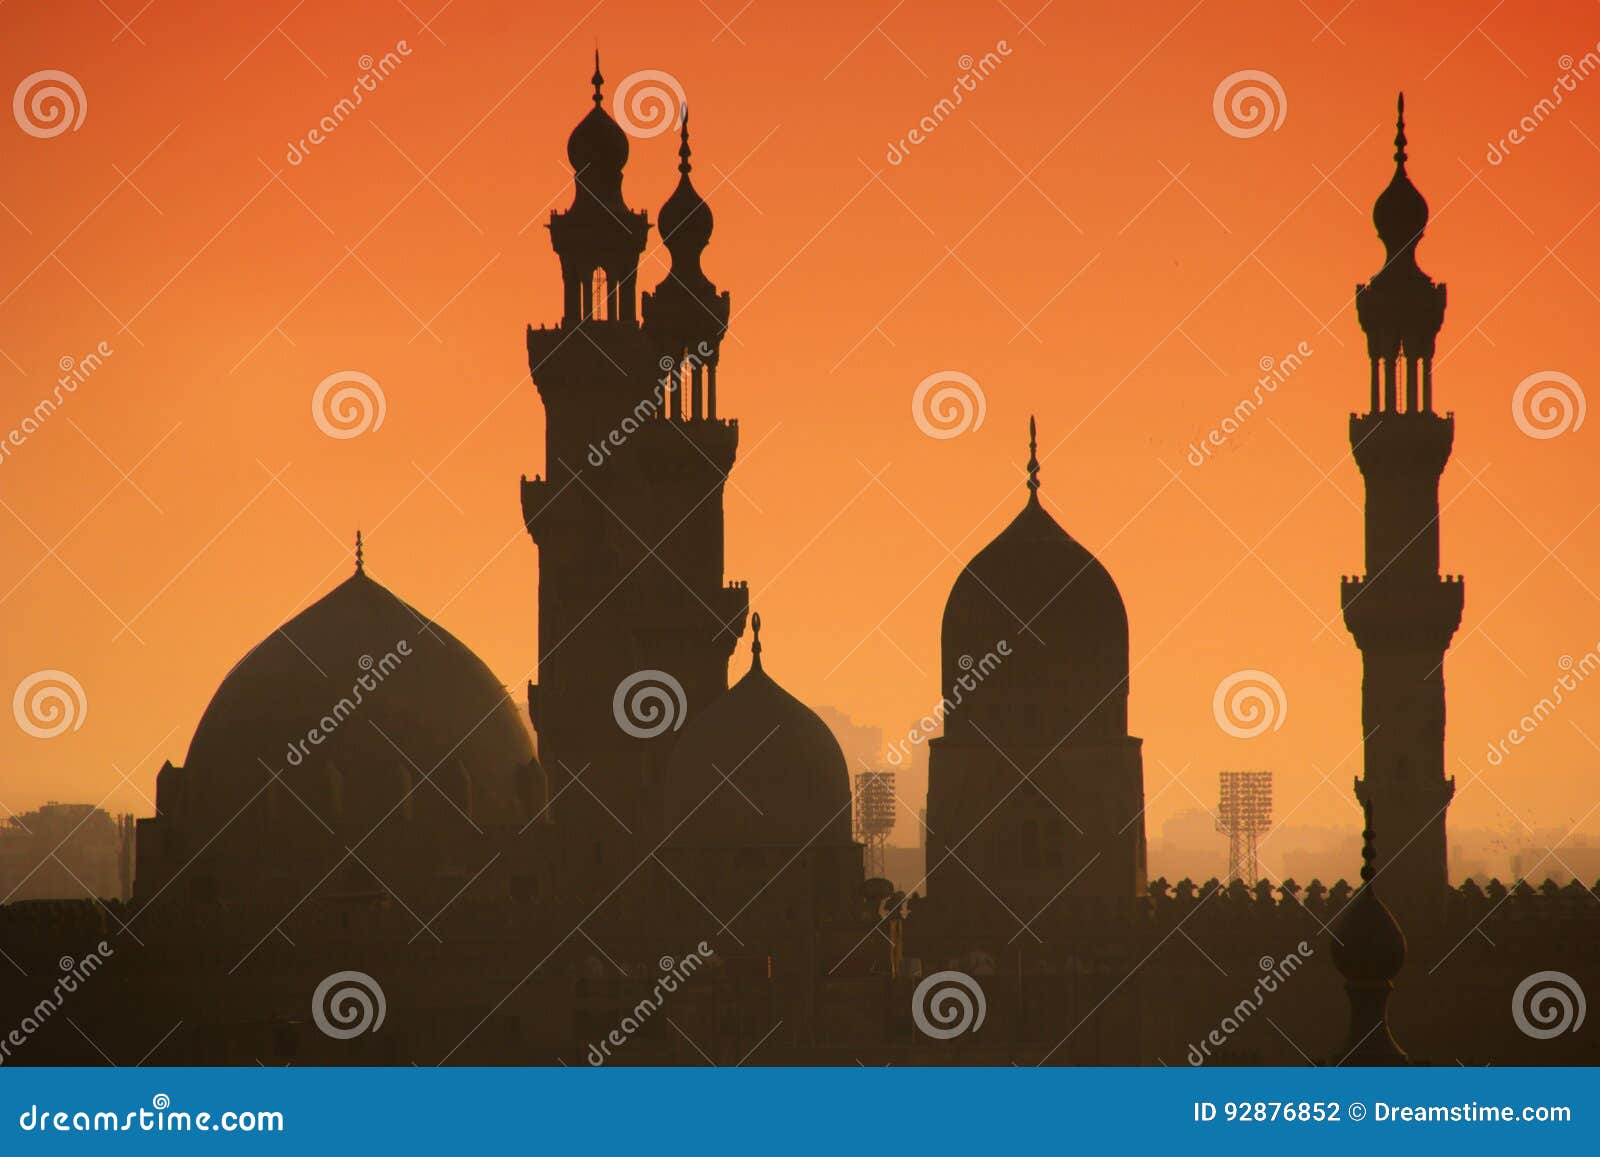 sunset on minarets of cairo